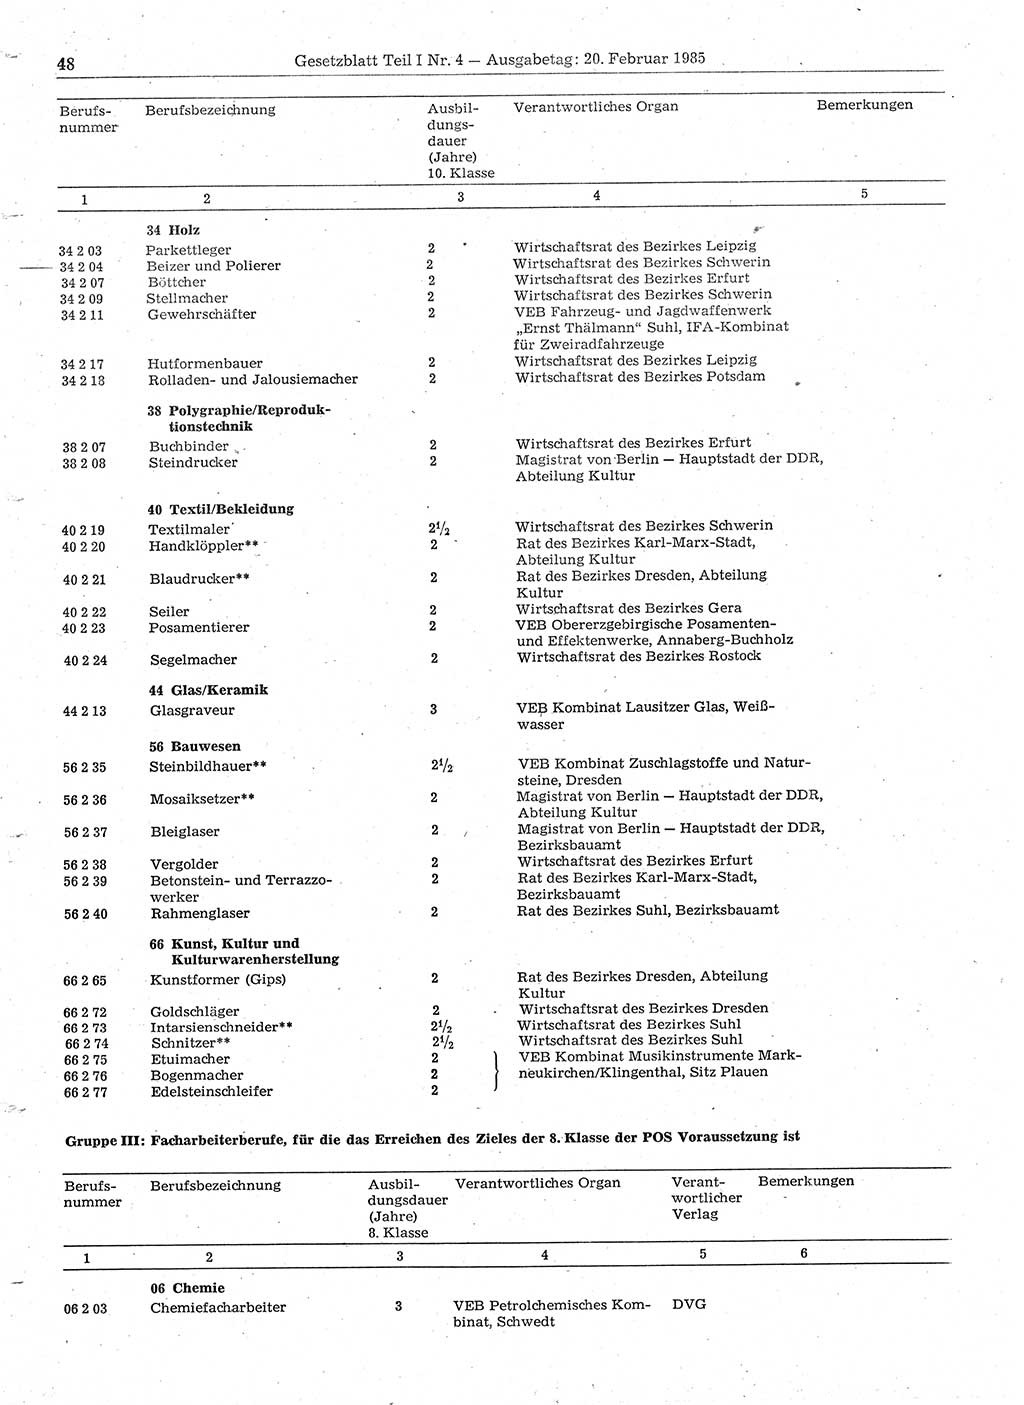 Gesetzblatt (GBl.) der Deutschen Demokratischen Republik (DDR) Teil Ⅰ 1985, Seite 48 (GBl. DDR Ⅰ 1985, S. 48)